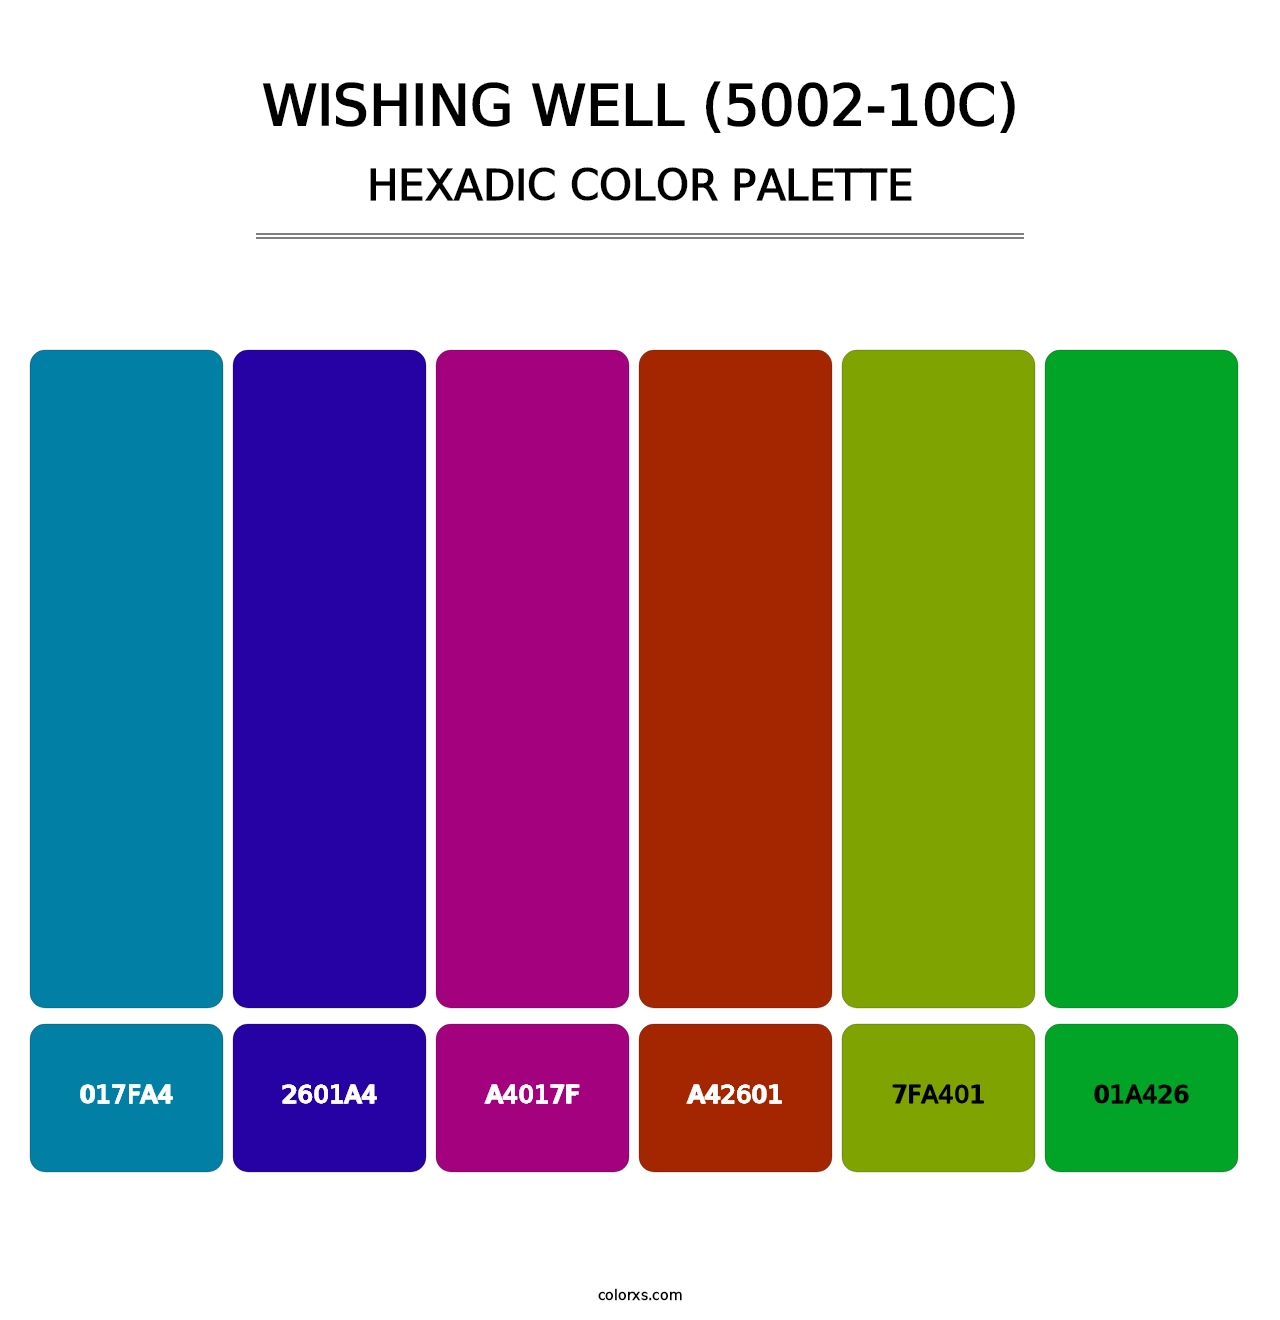 Wishing Well (5002-10C) - Hexadic Color Palette